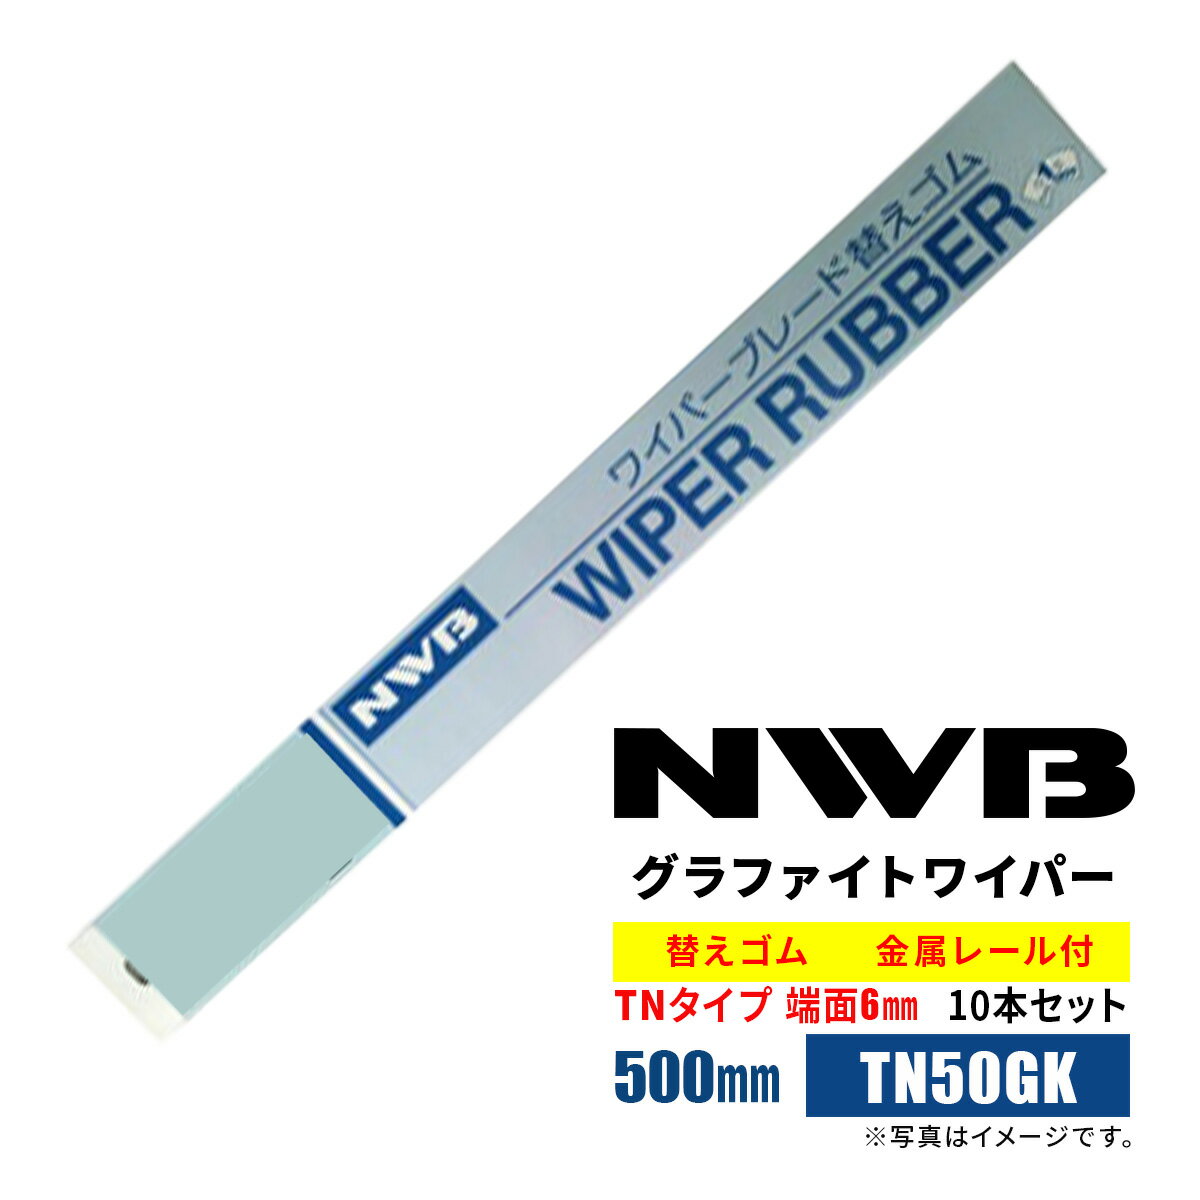 NWB グラファイトワイパー替えゴム 500mm TN50GK 10本入り 端面6mm 金属レール付